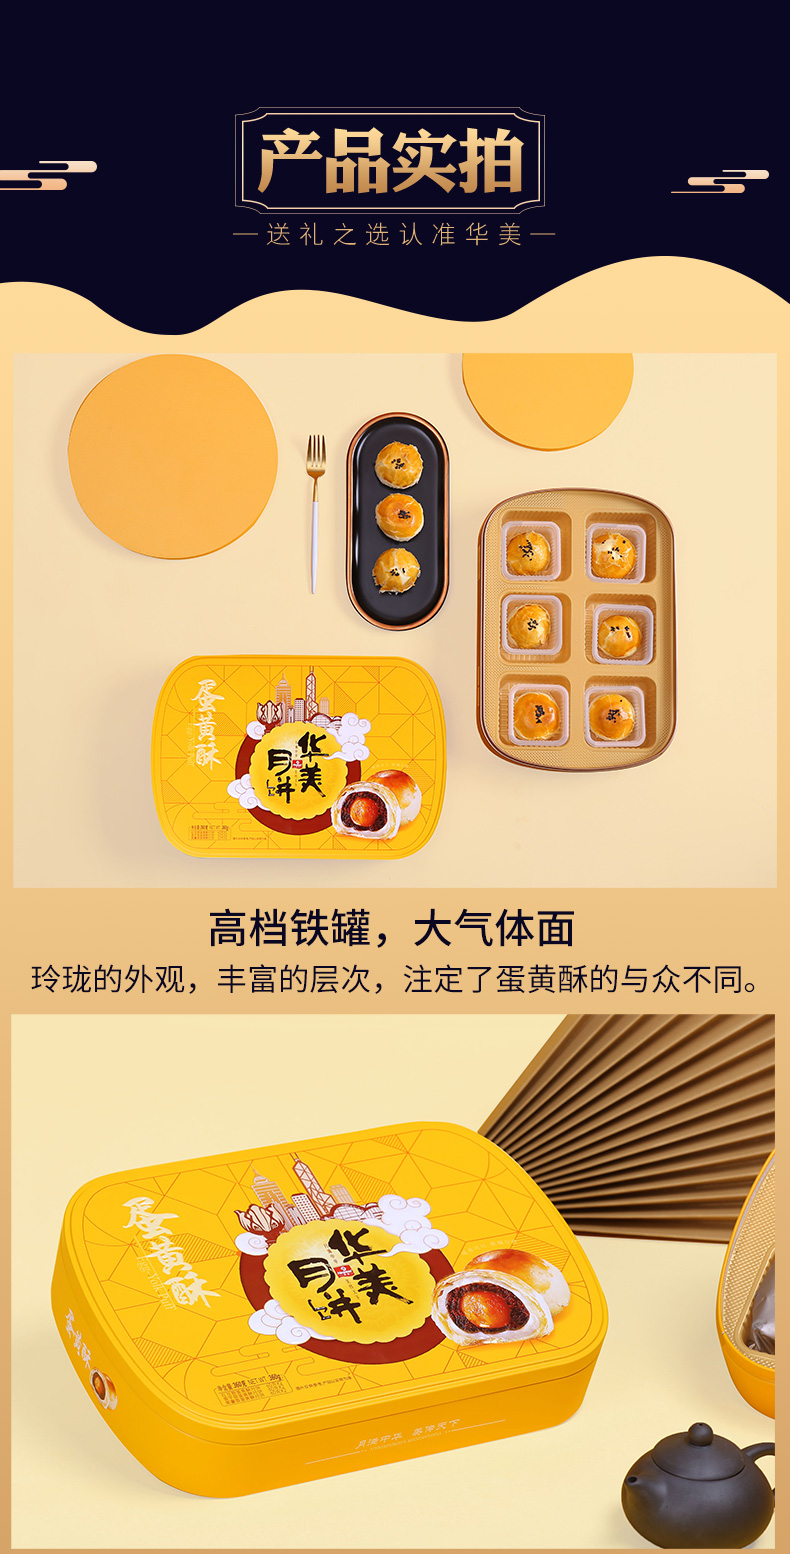 東莞華美 360g團圓蛋黃酥禮盒，蛋黃酥月餅禮盒，鄭州華美月餅廠家總代理